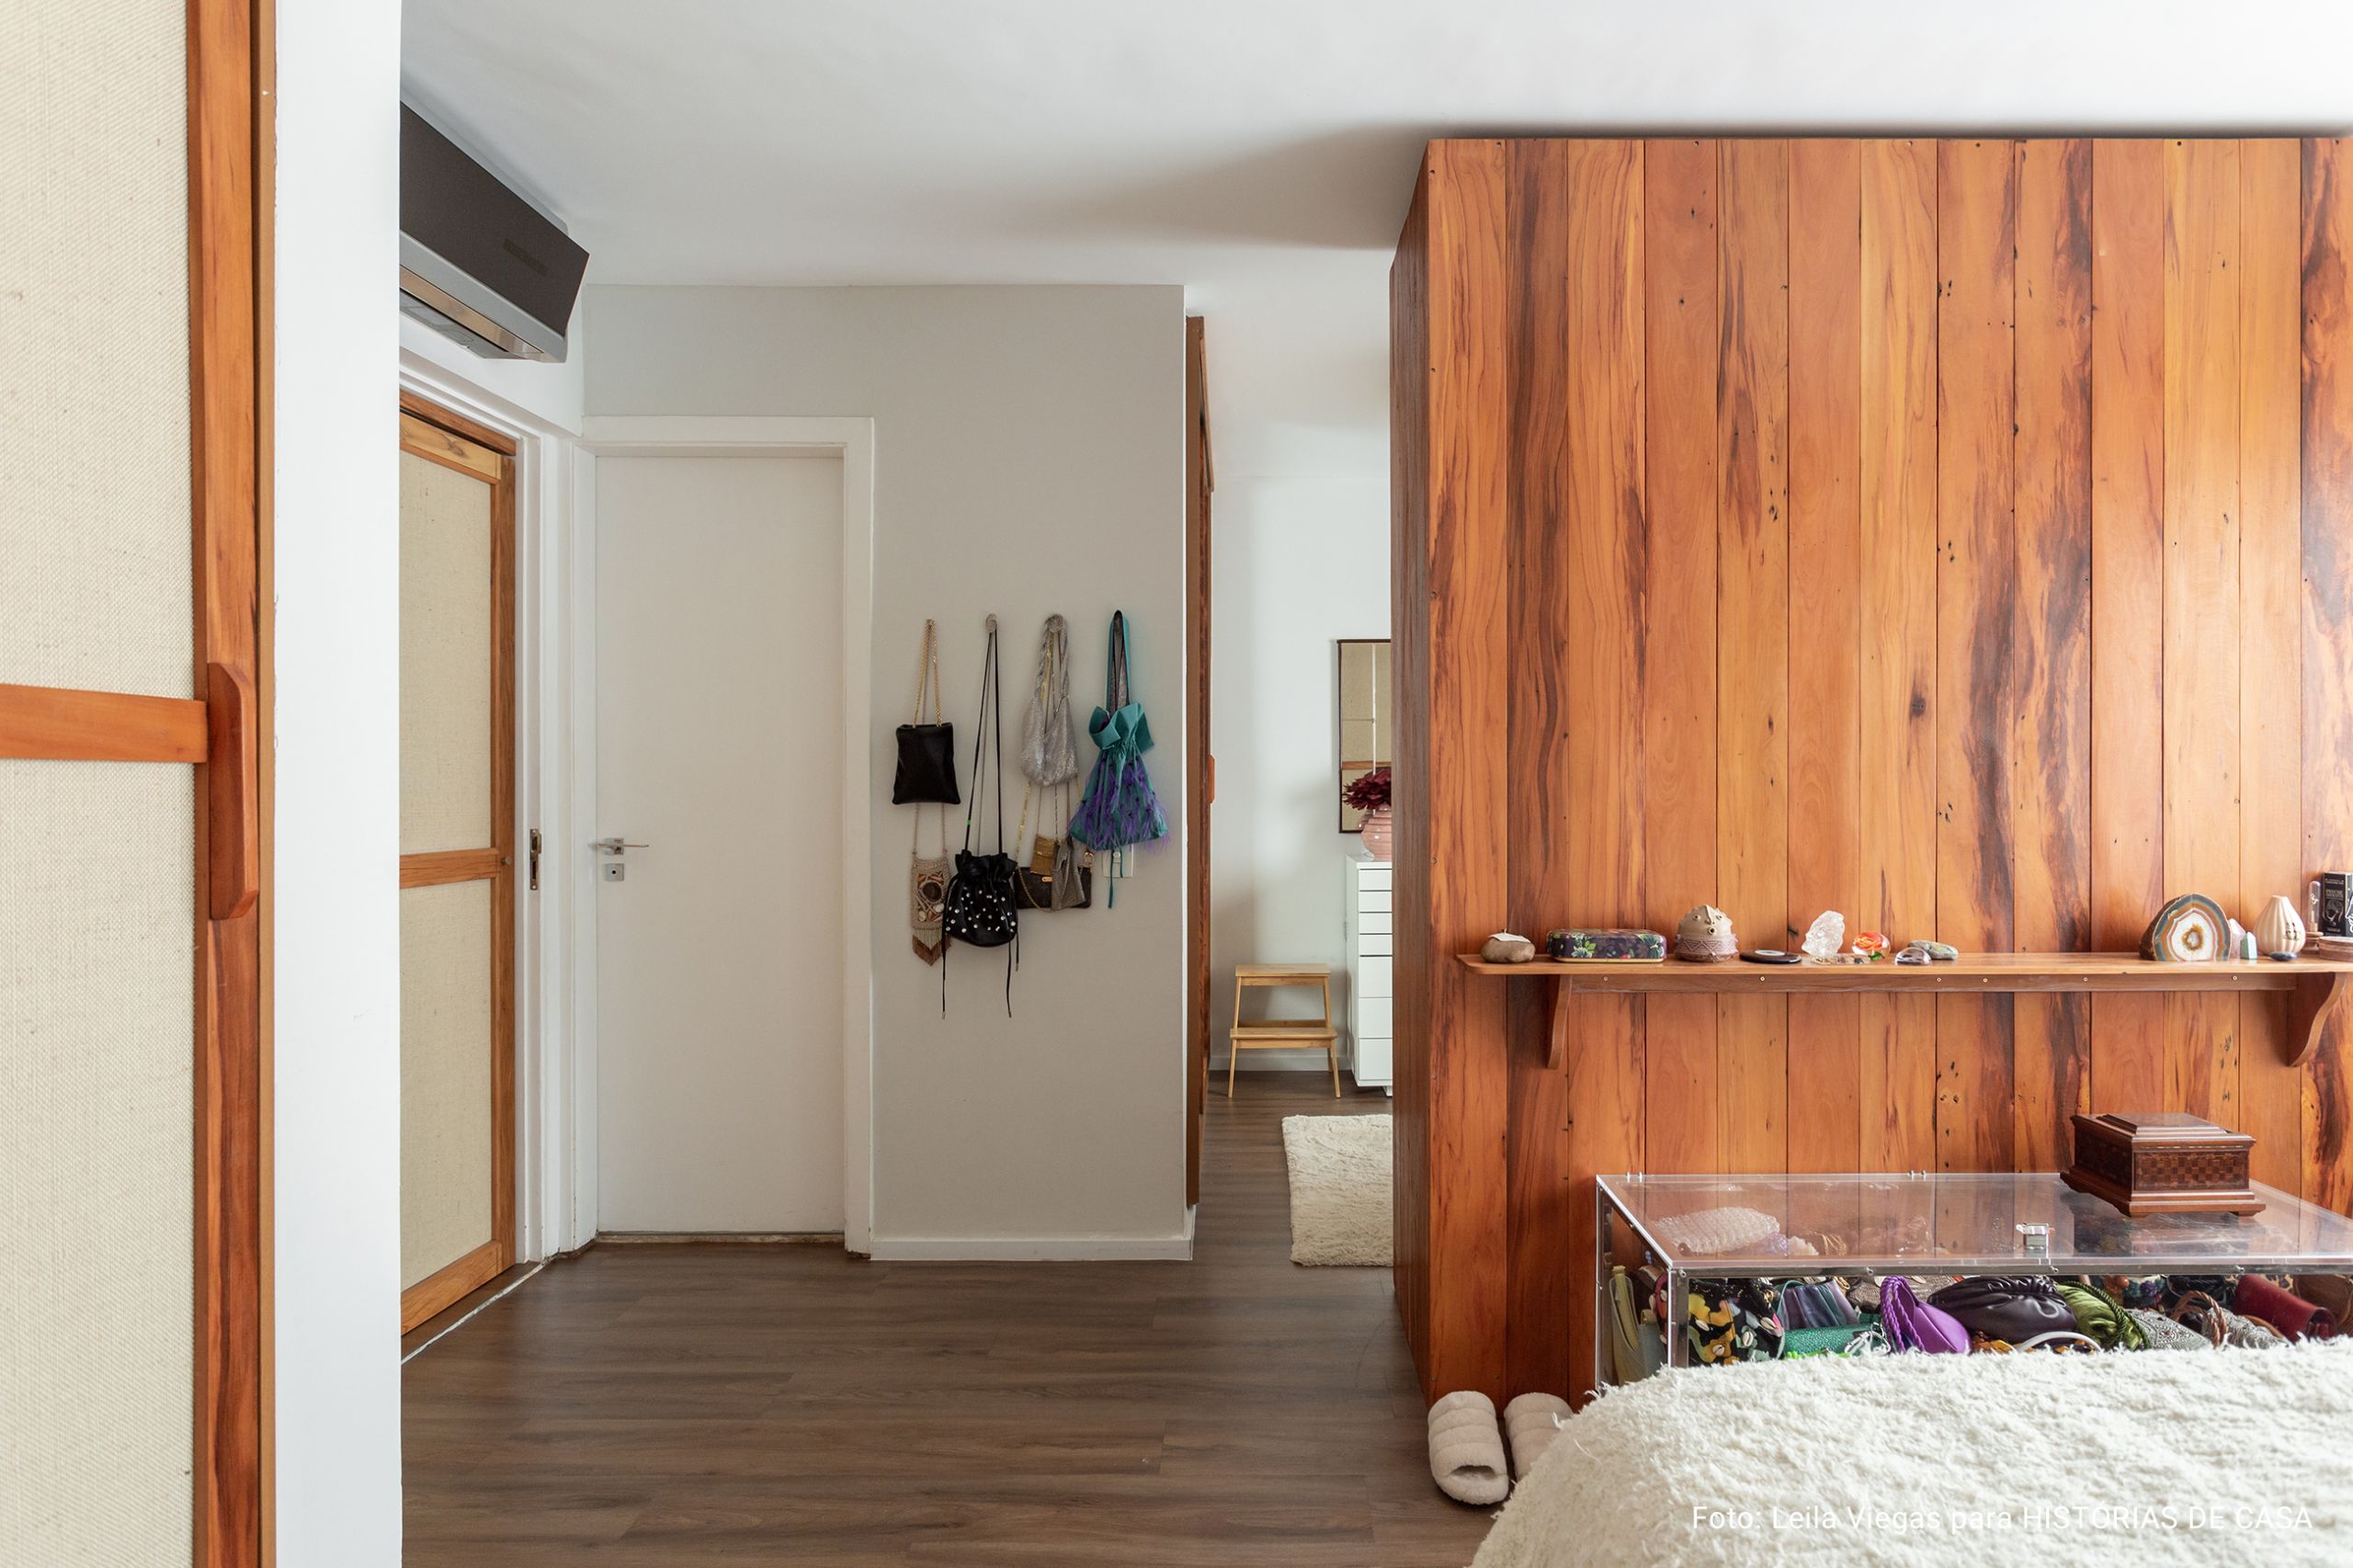 Apartamento com living e cozinha integrados com piso de madeira e decoração contemporânea